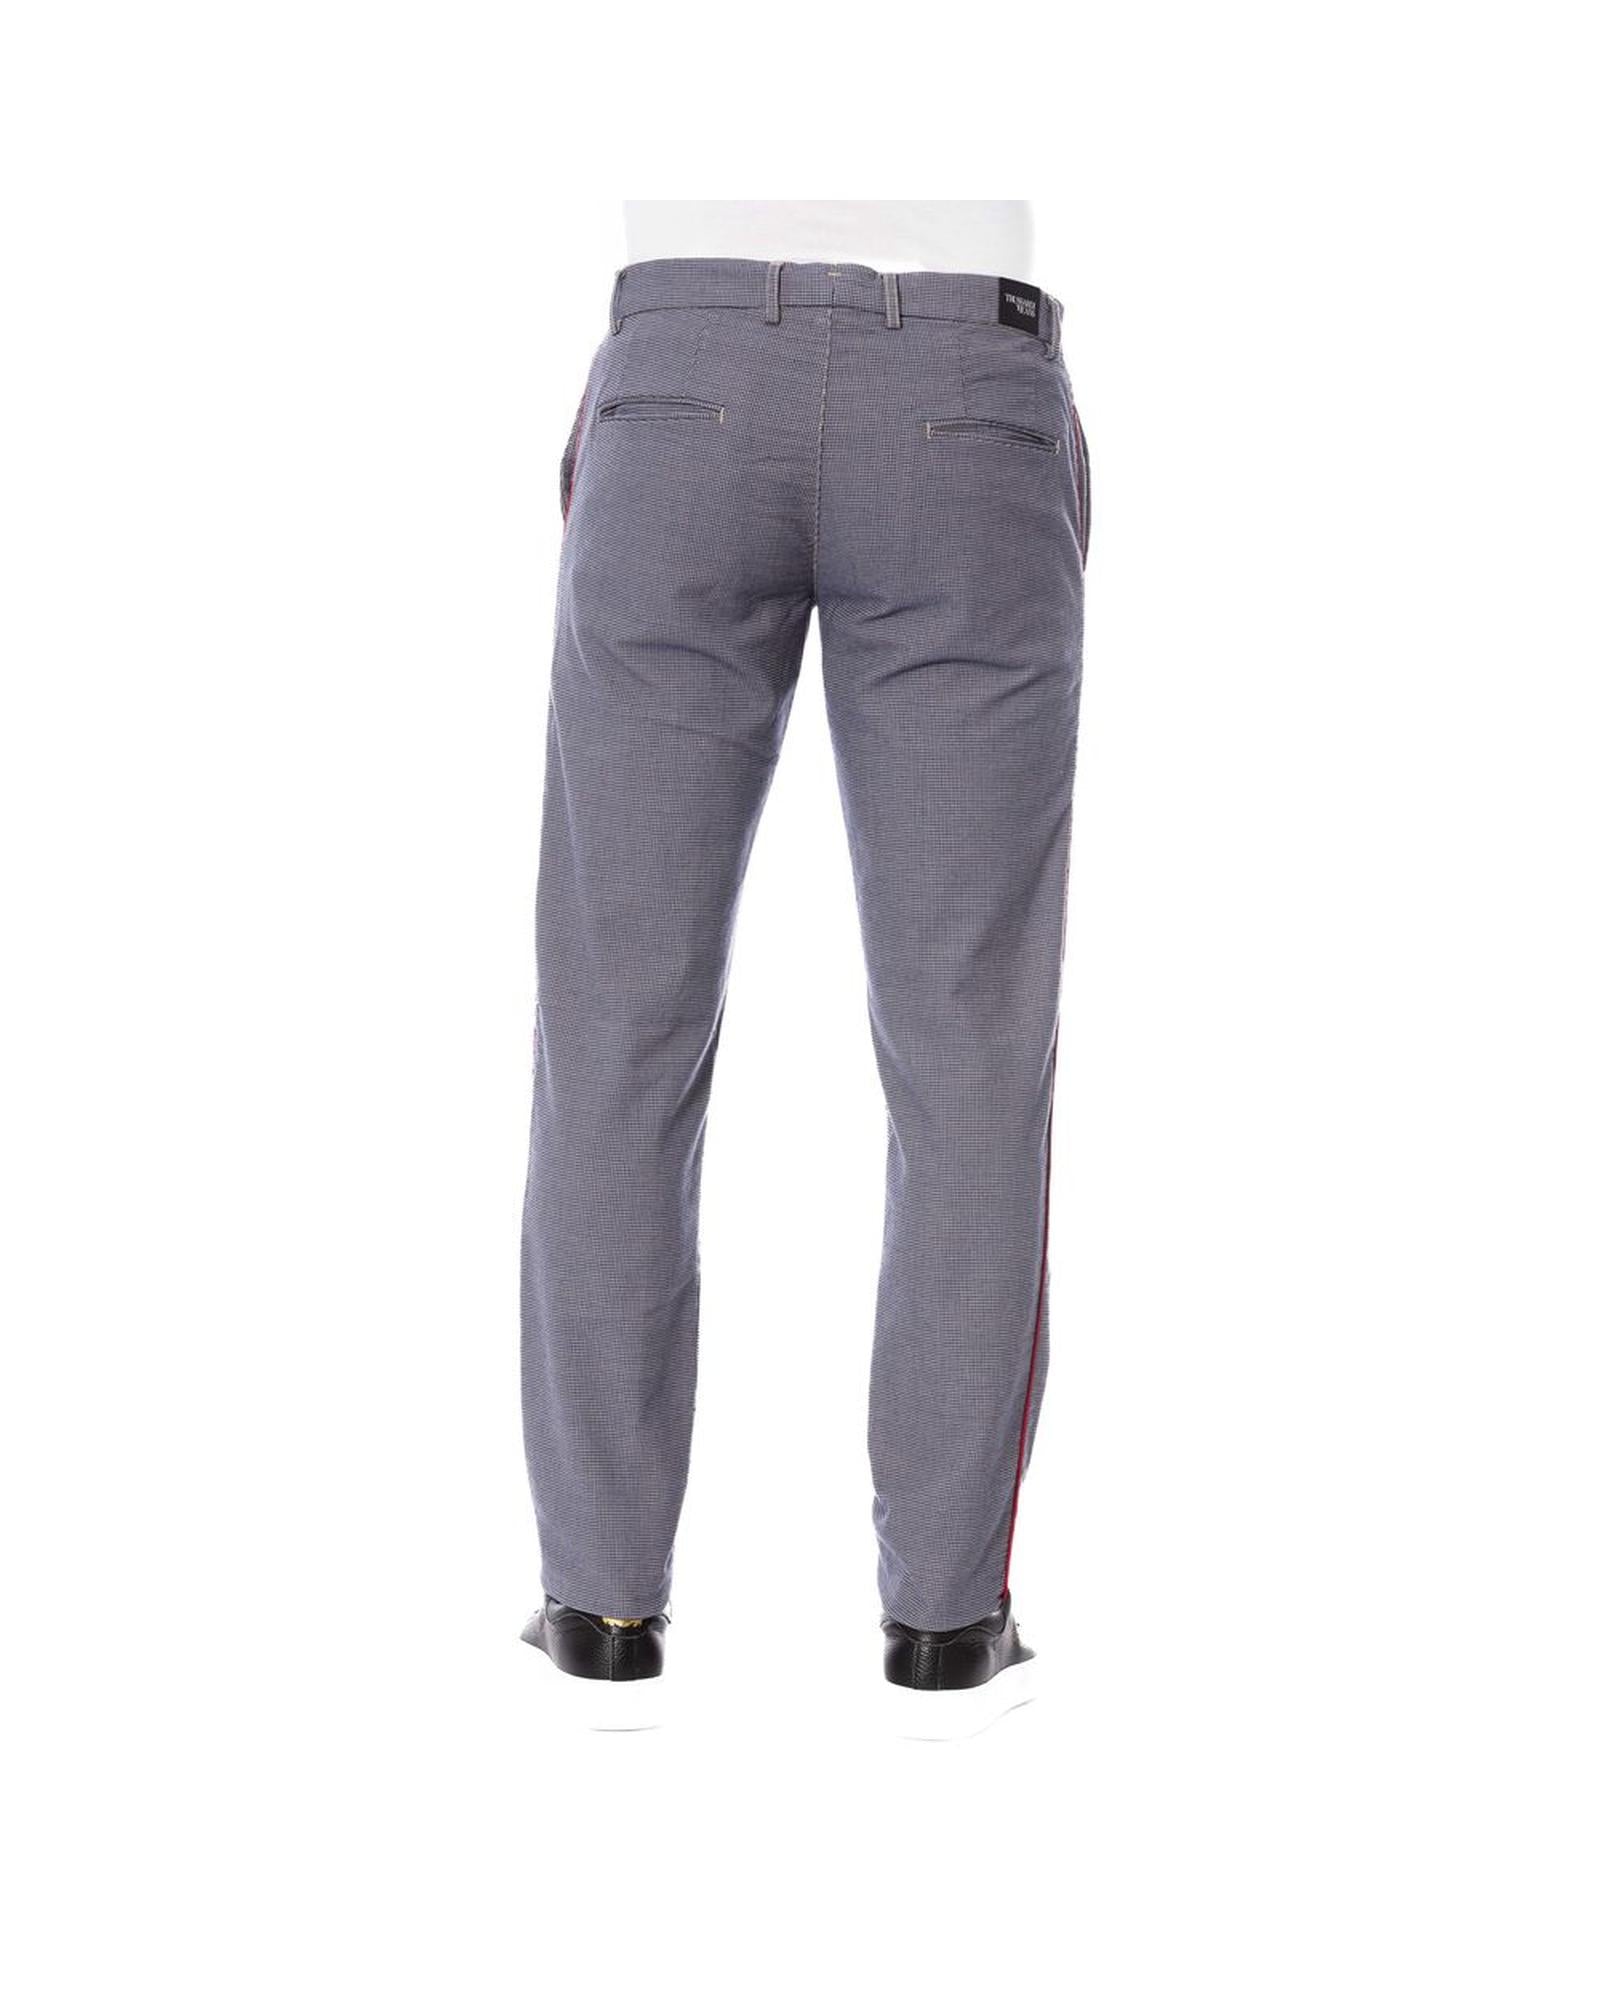 Men's Blue Cotton Jeans & Pant - W48 US